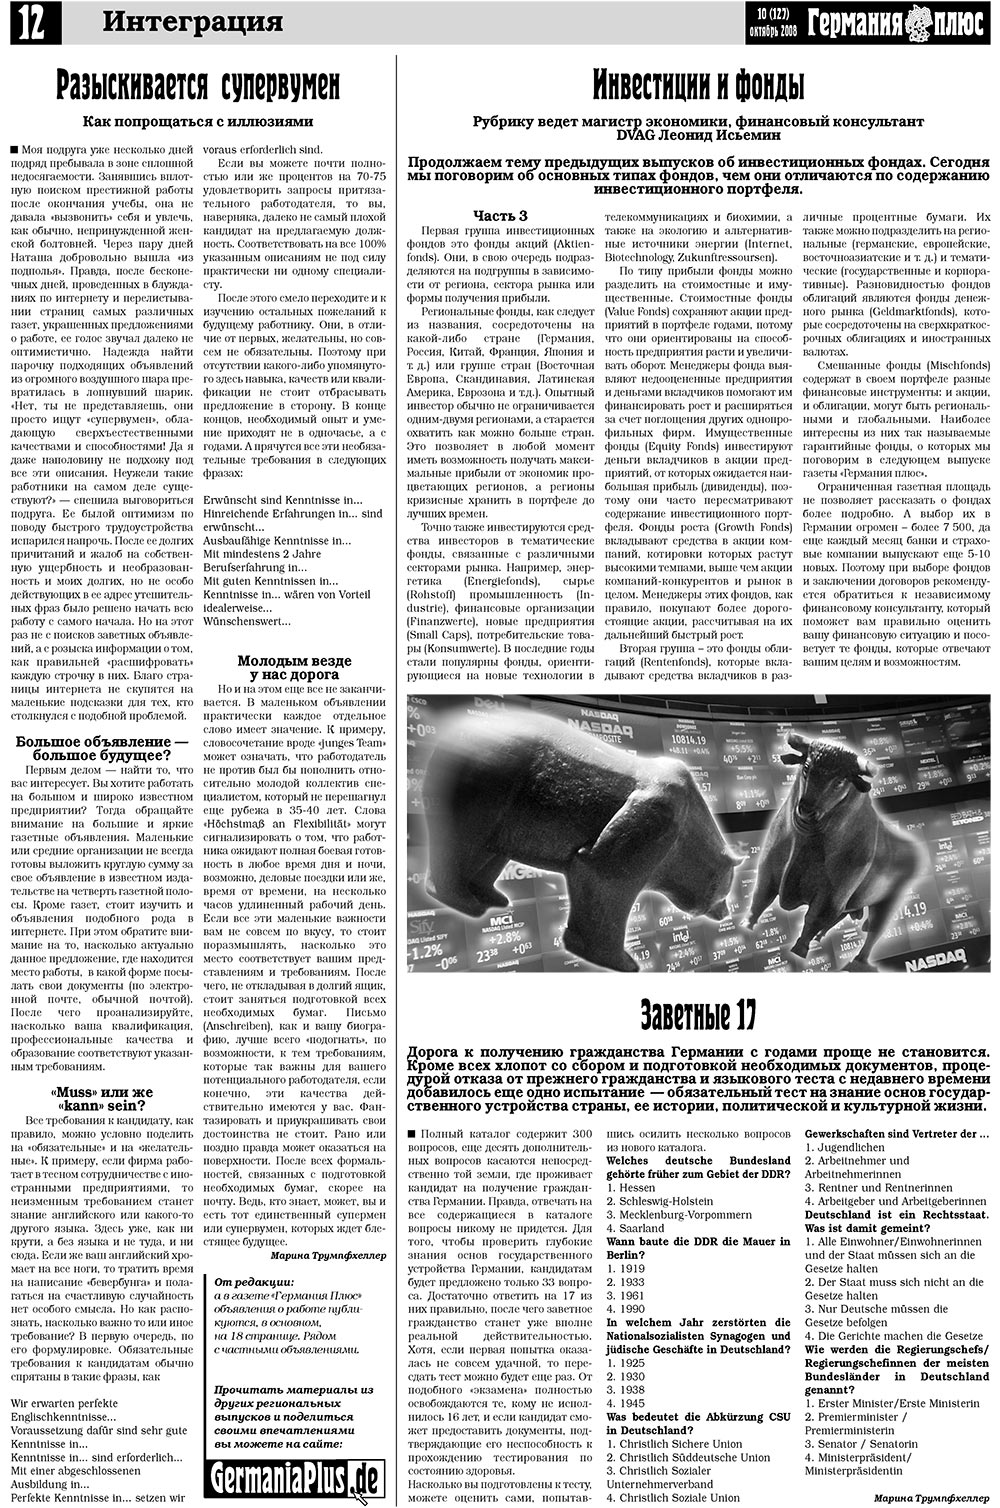 Германия плюс, газета. 2008 №10 стр.16